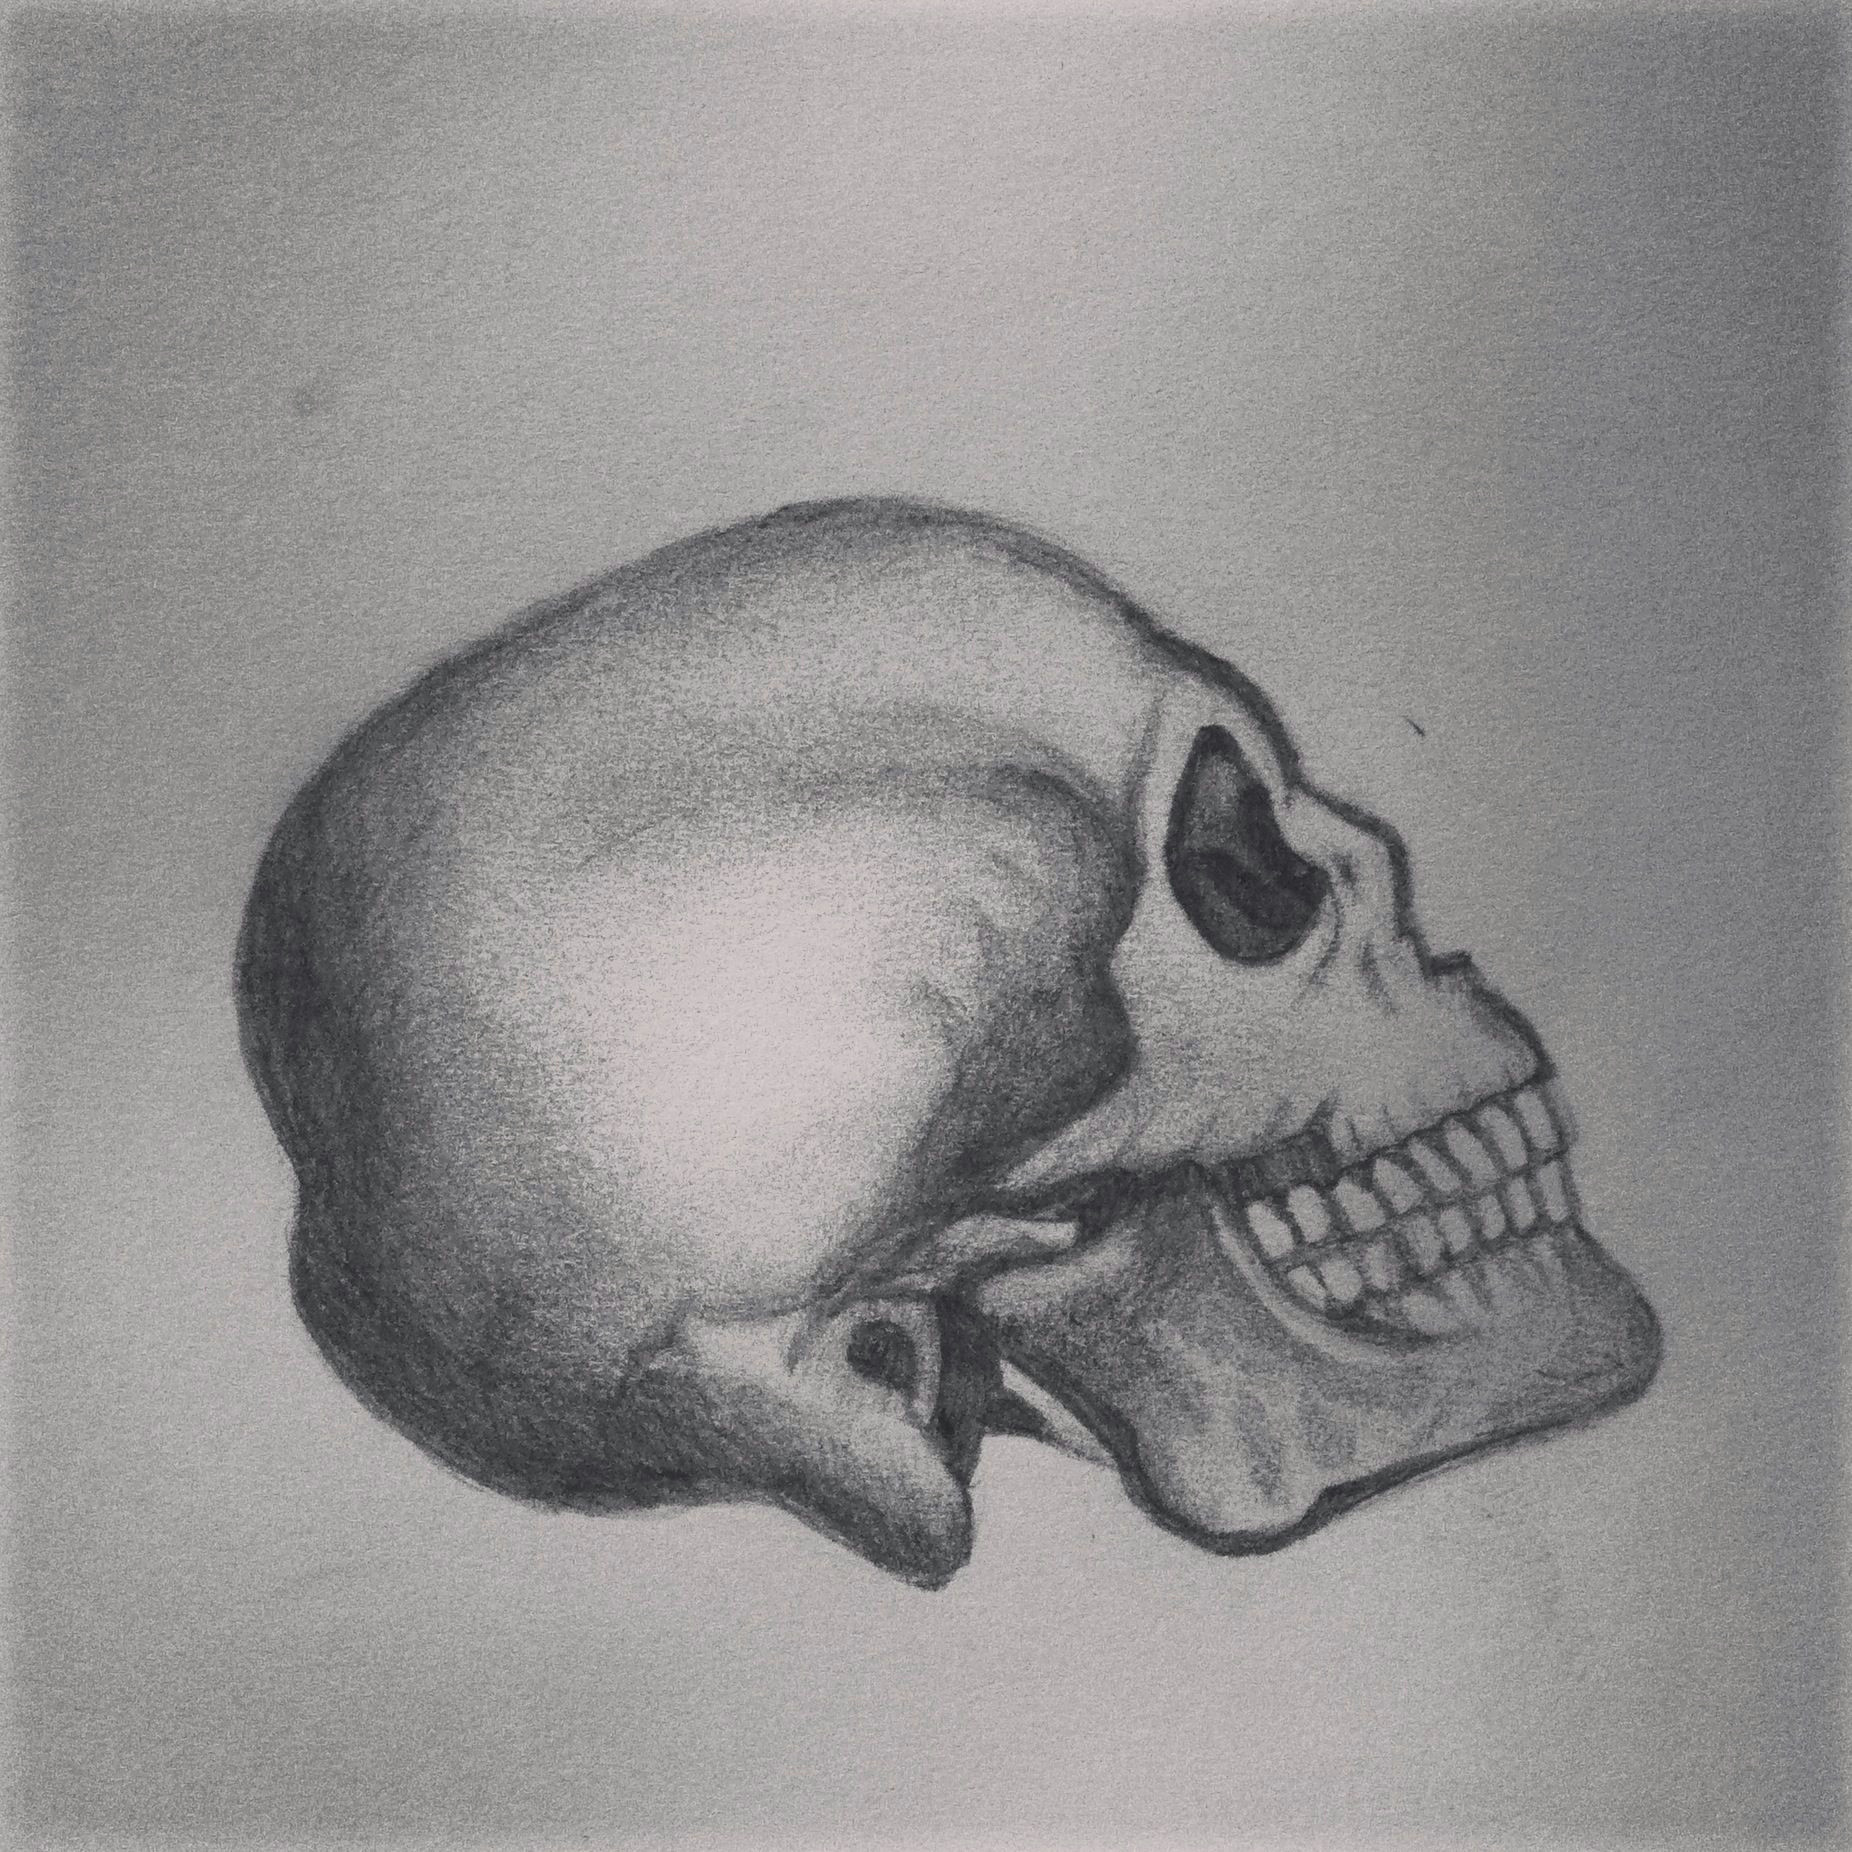 Skull Drawing Shading Skull Head Pencil Shading Drawing Sketch Tattoo Idea Design